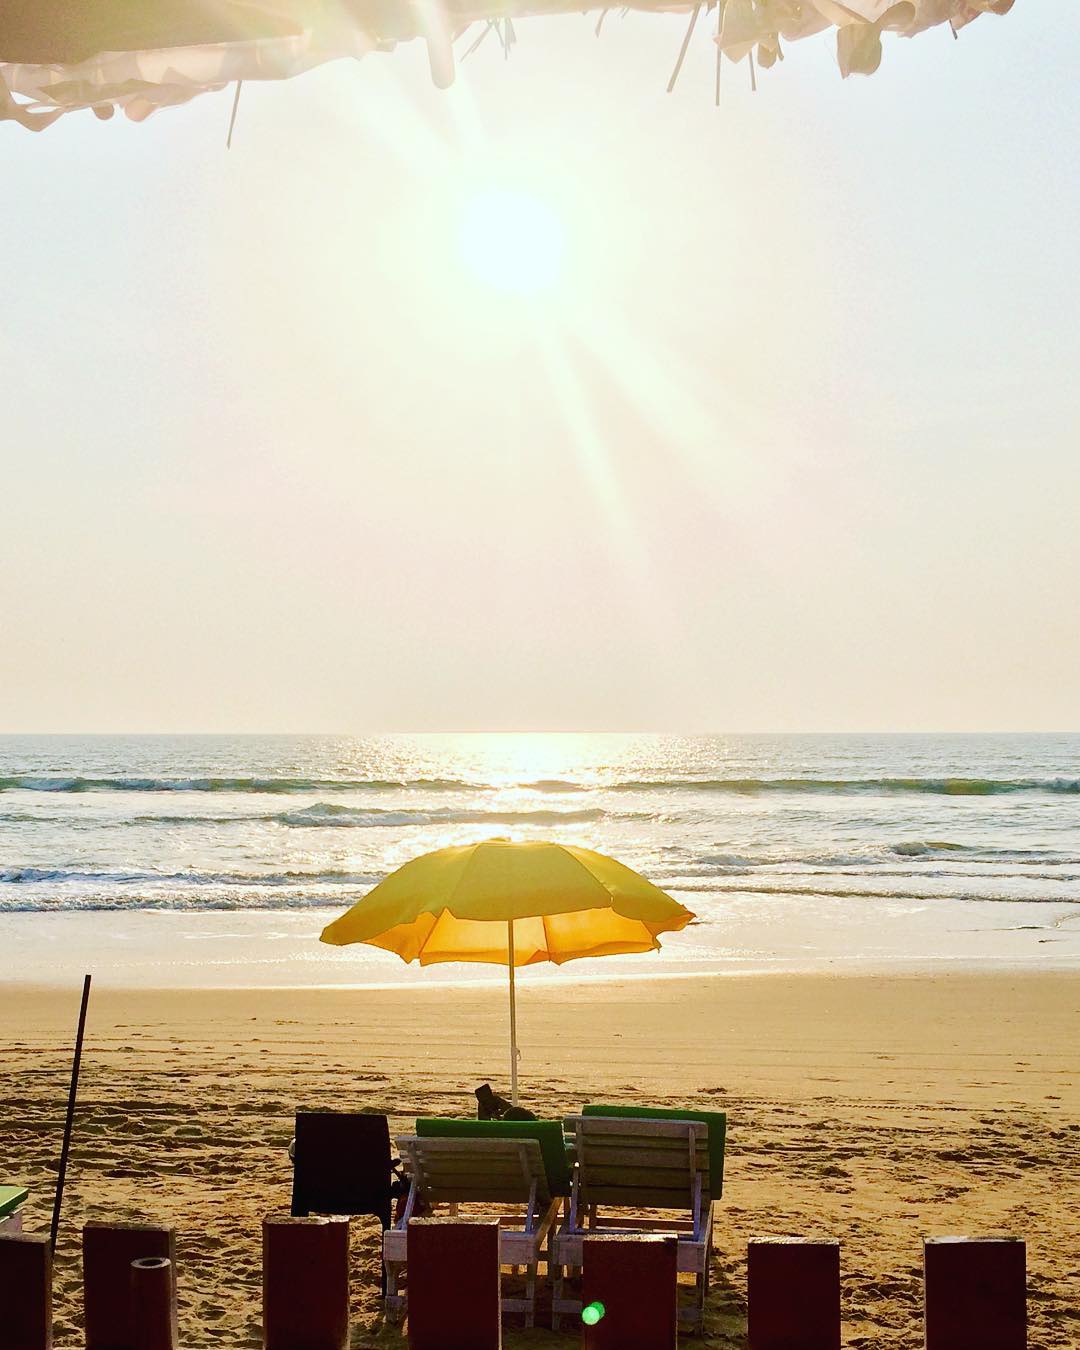 Cavelossim Beach - South Goa beach